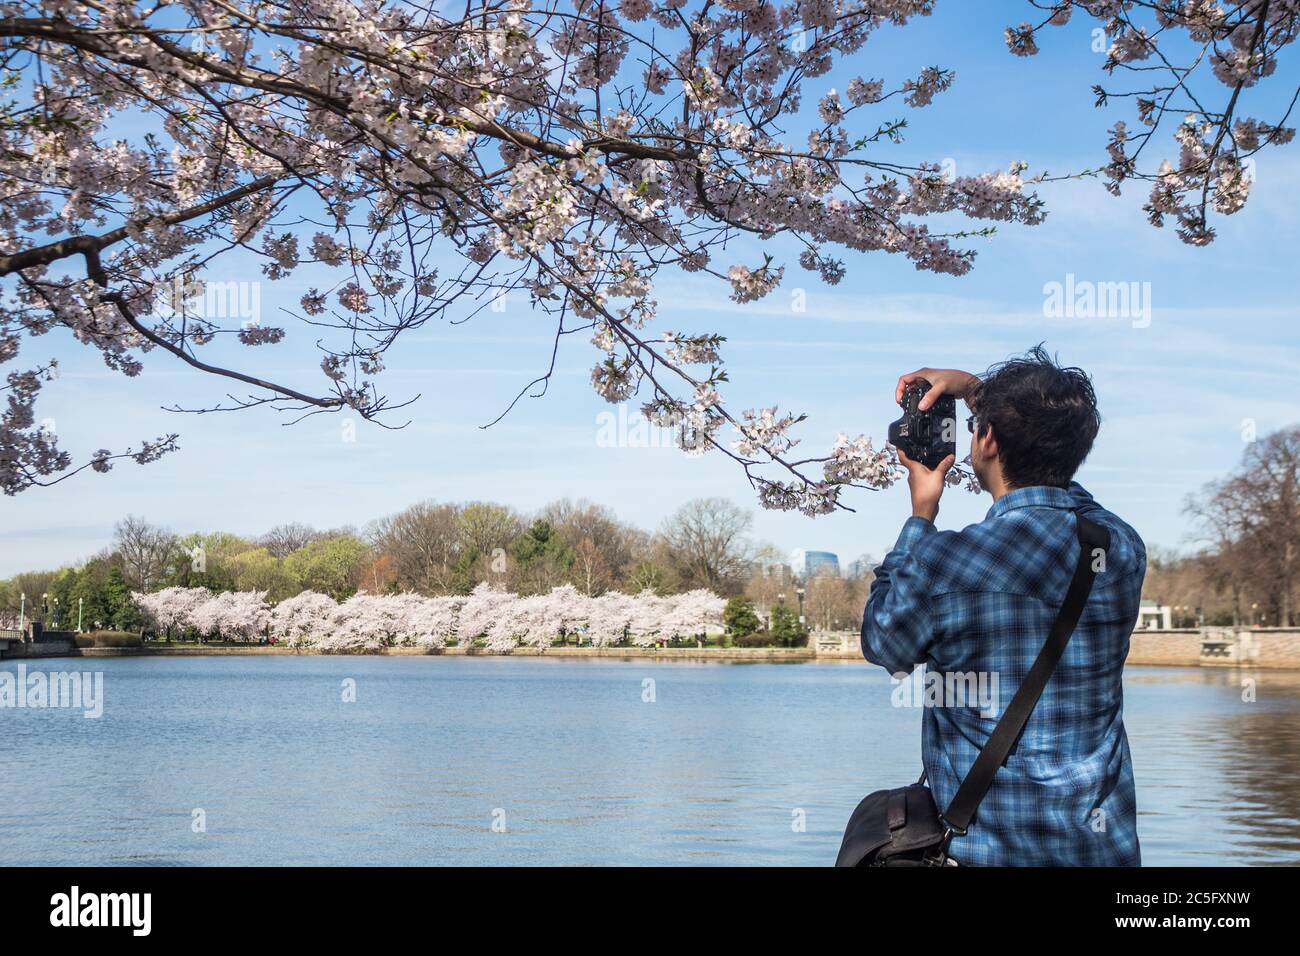 Ein junger männlicher Fotograf fotografiert / fotografiert Kirschblüten / Sakura entlang Potomac River, Washington, D.C., USA Stockfoto